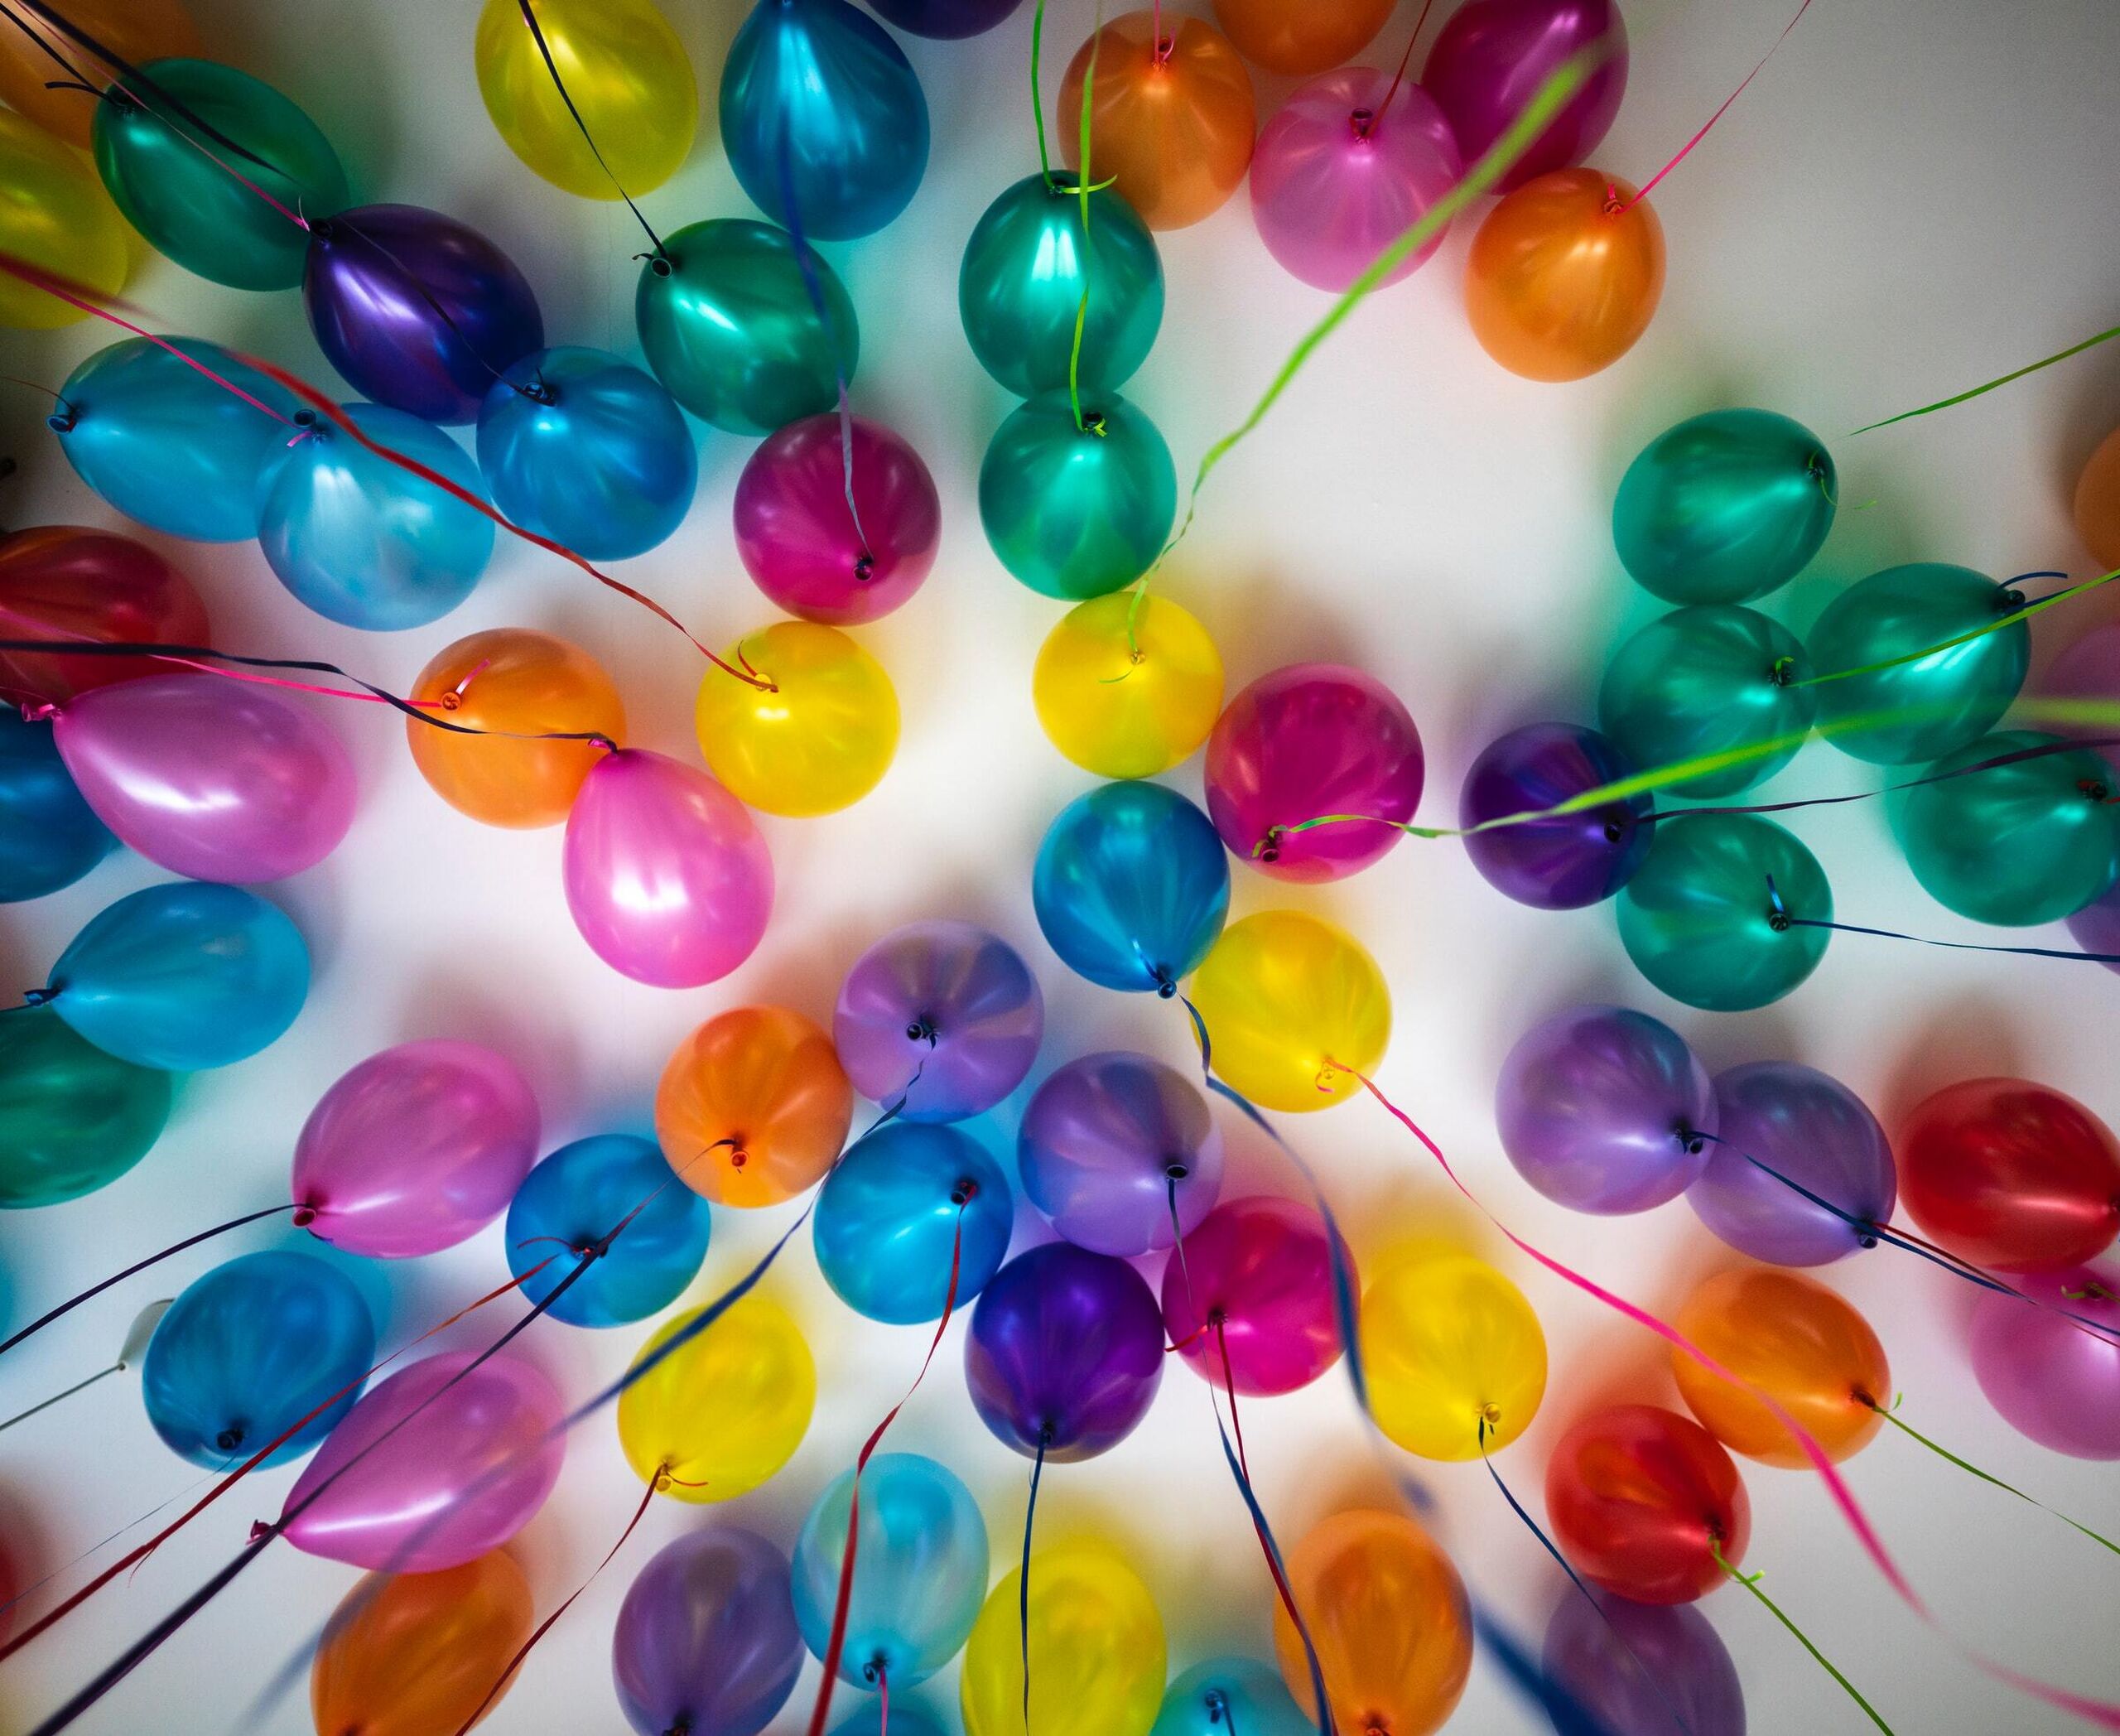 Balloonsceiling